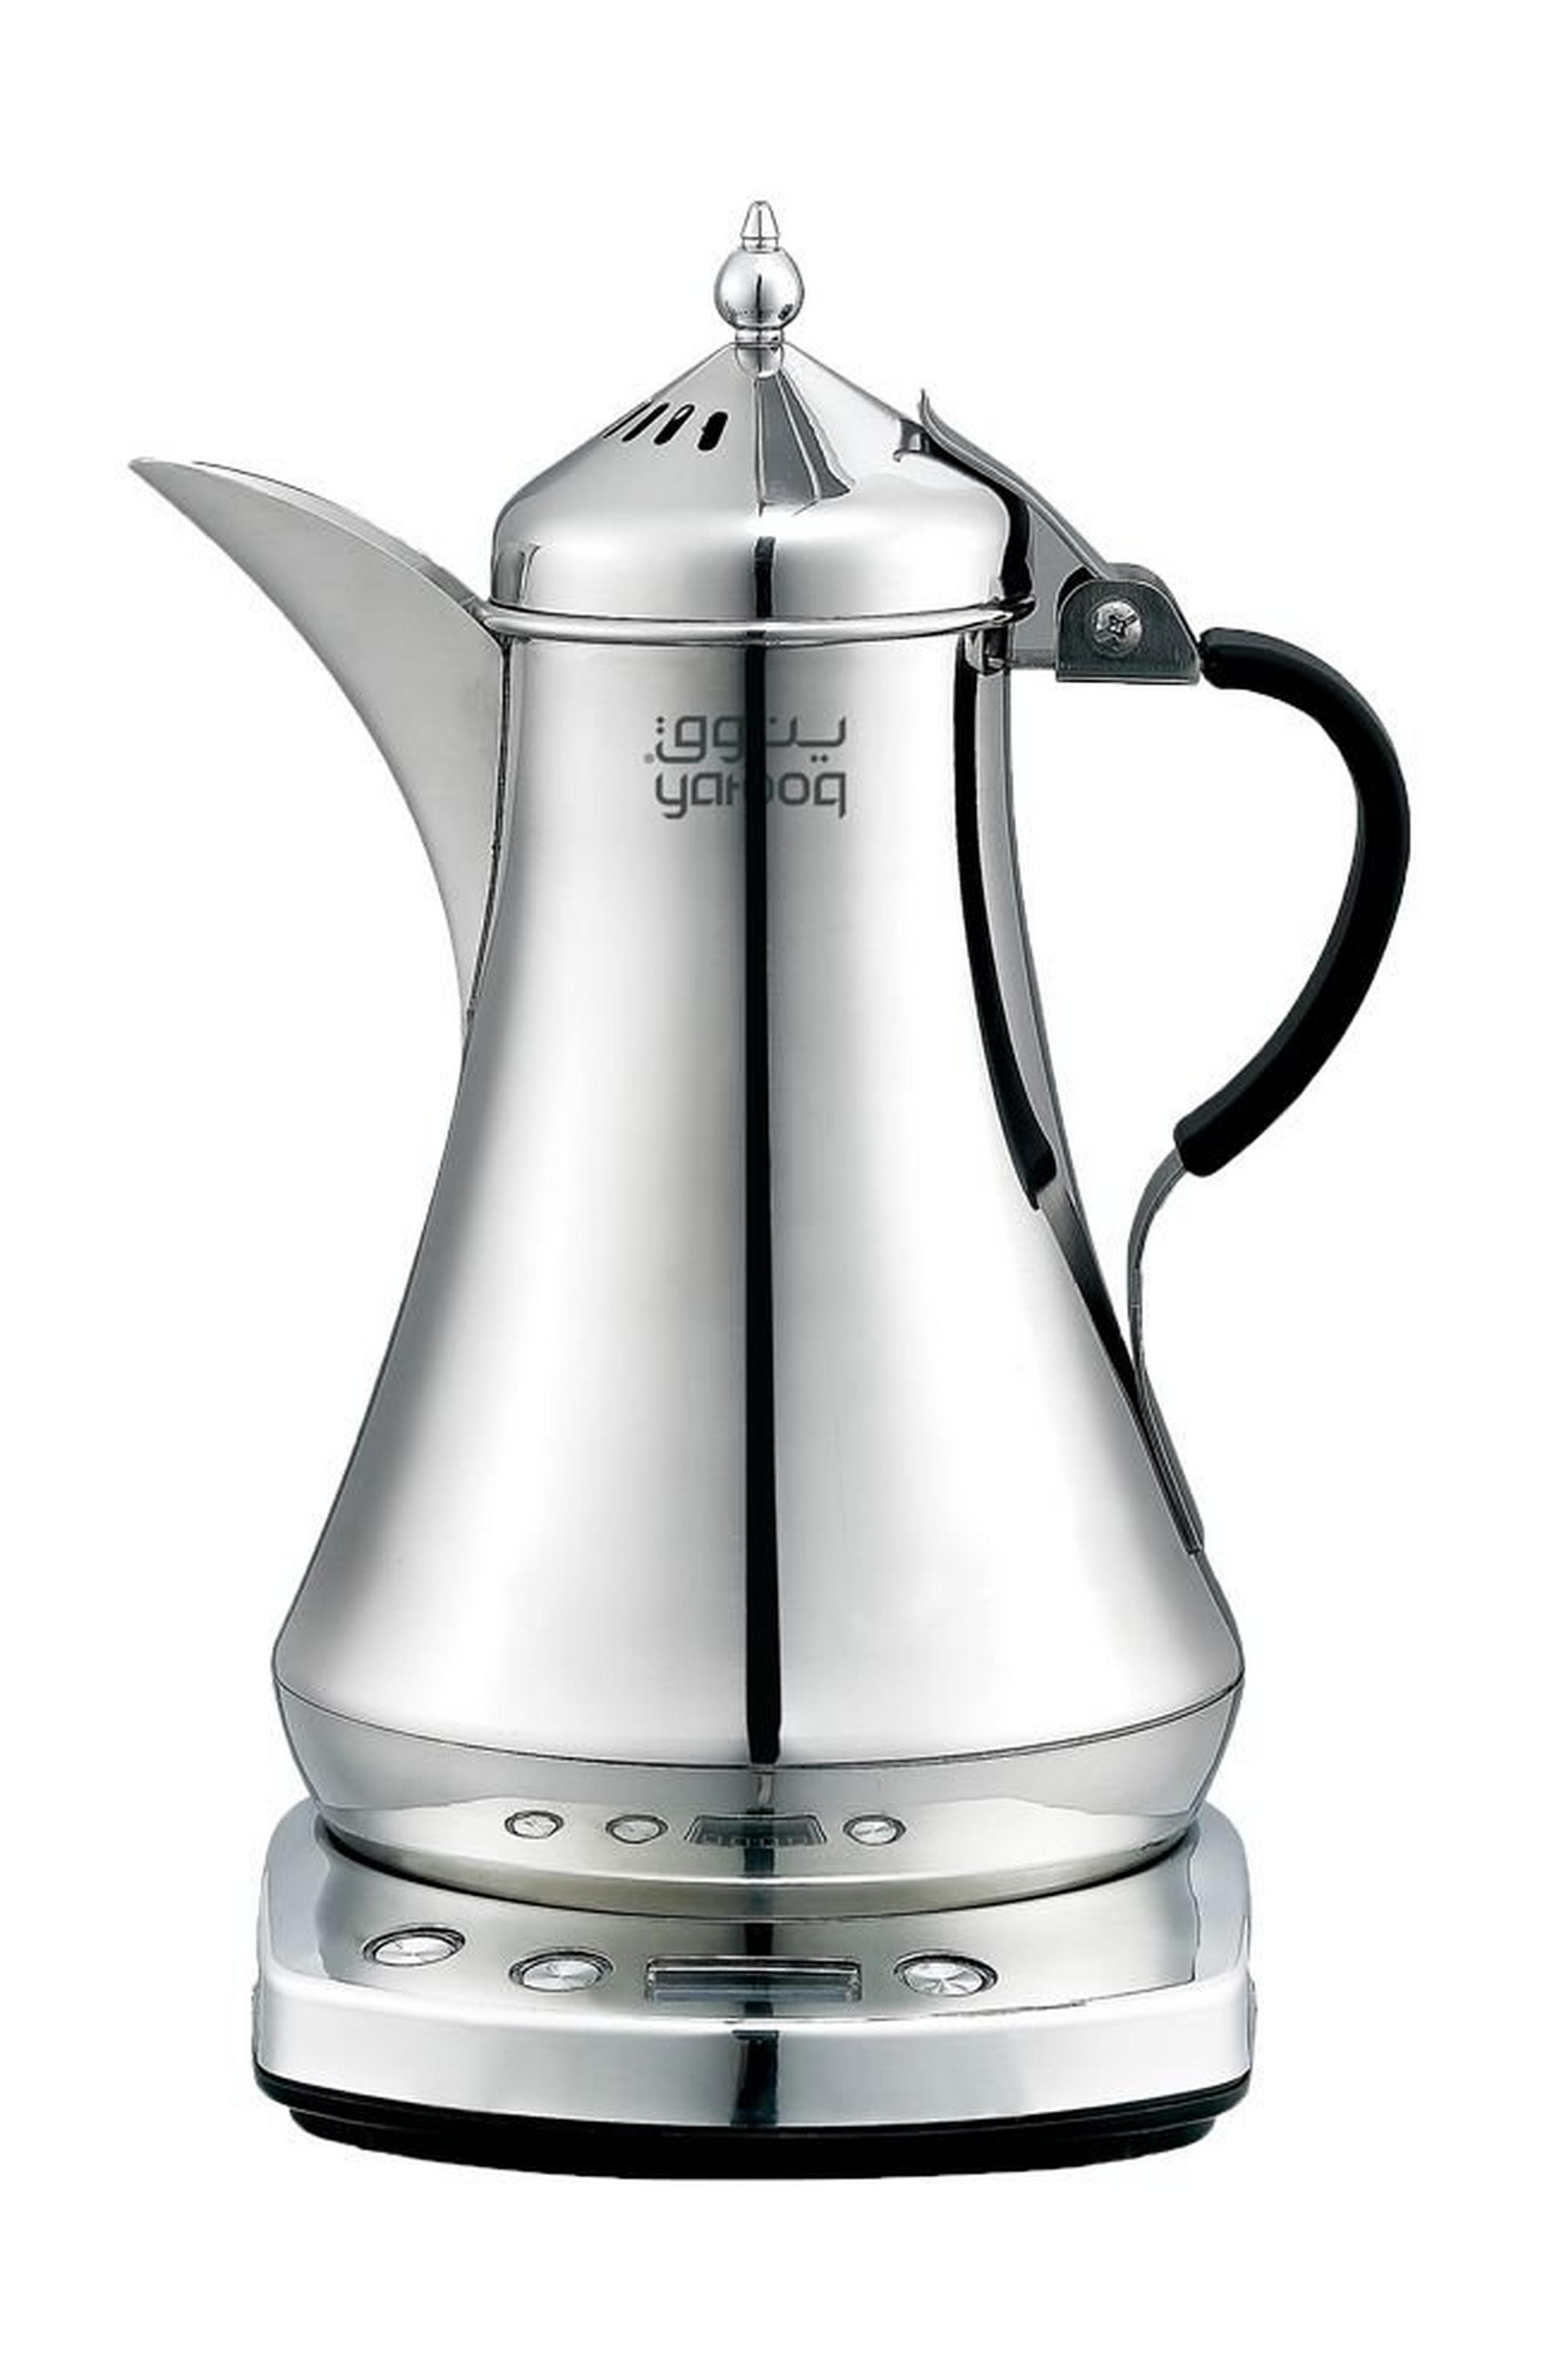 Yatooq Arabic Electric Coffee Maker 875ML - Silver